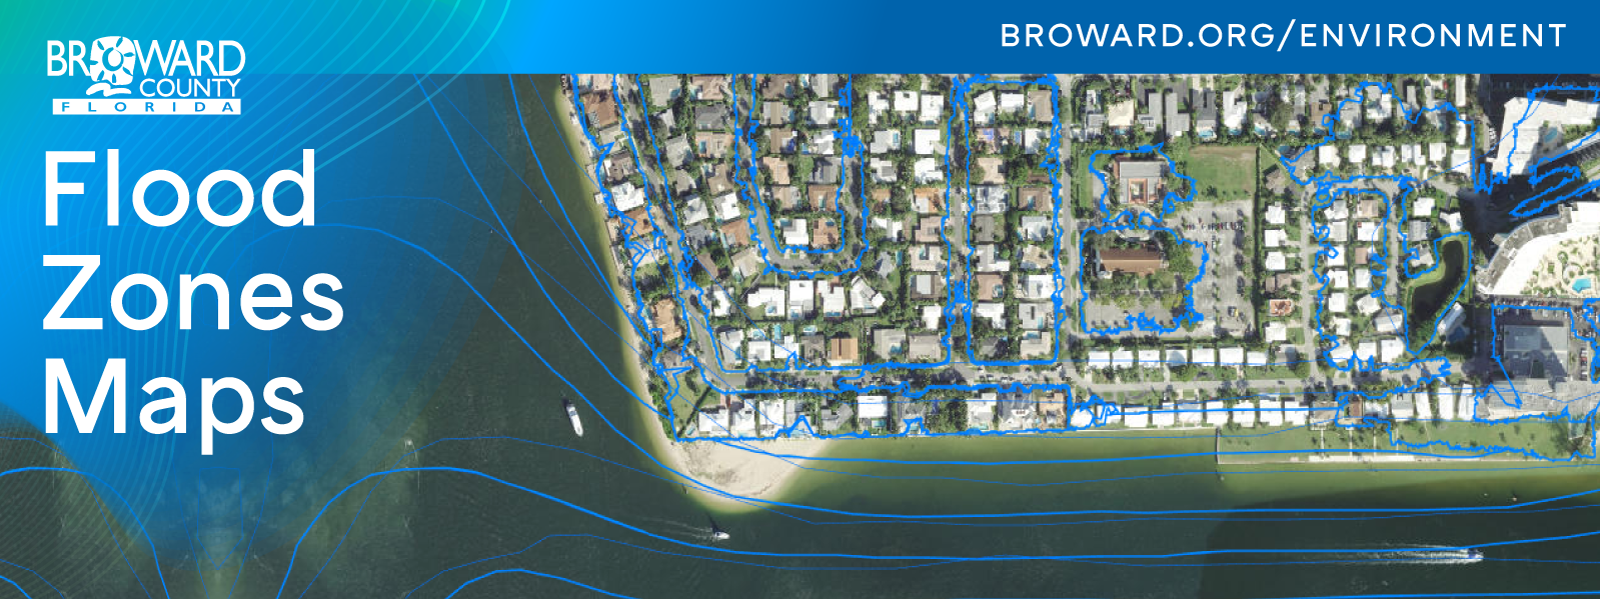 Broward Flood Zone Map Sexiz Pix